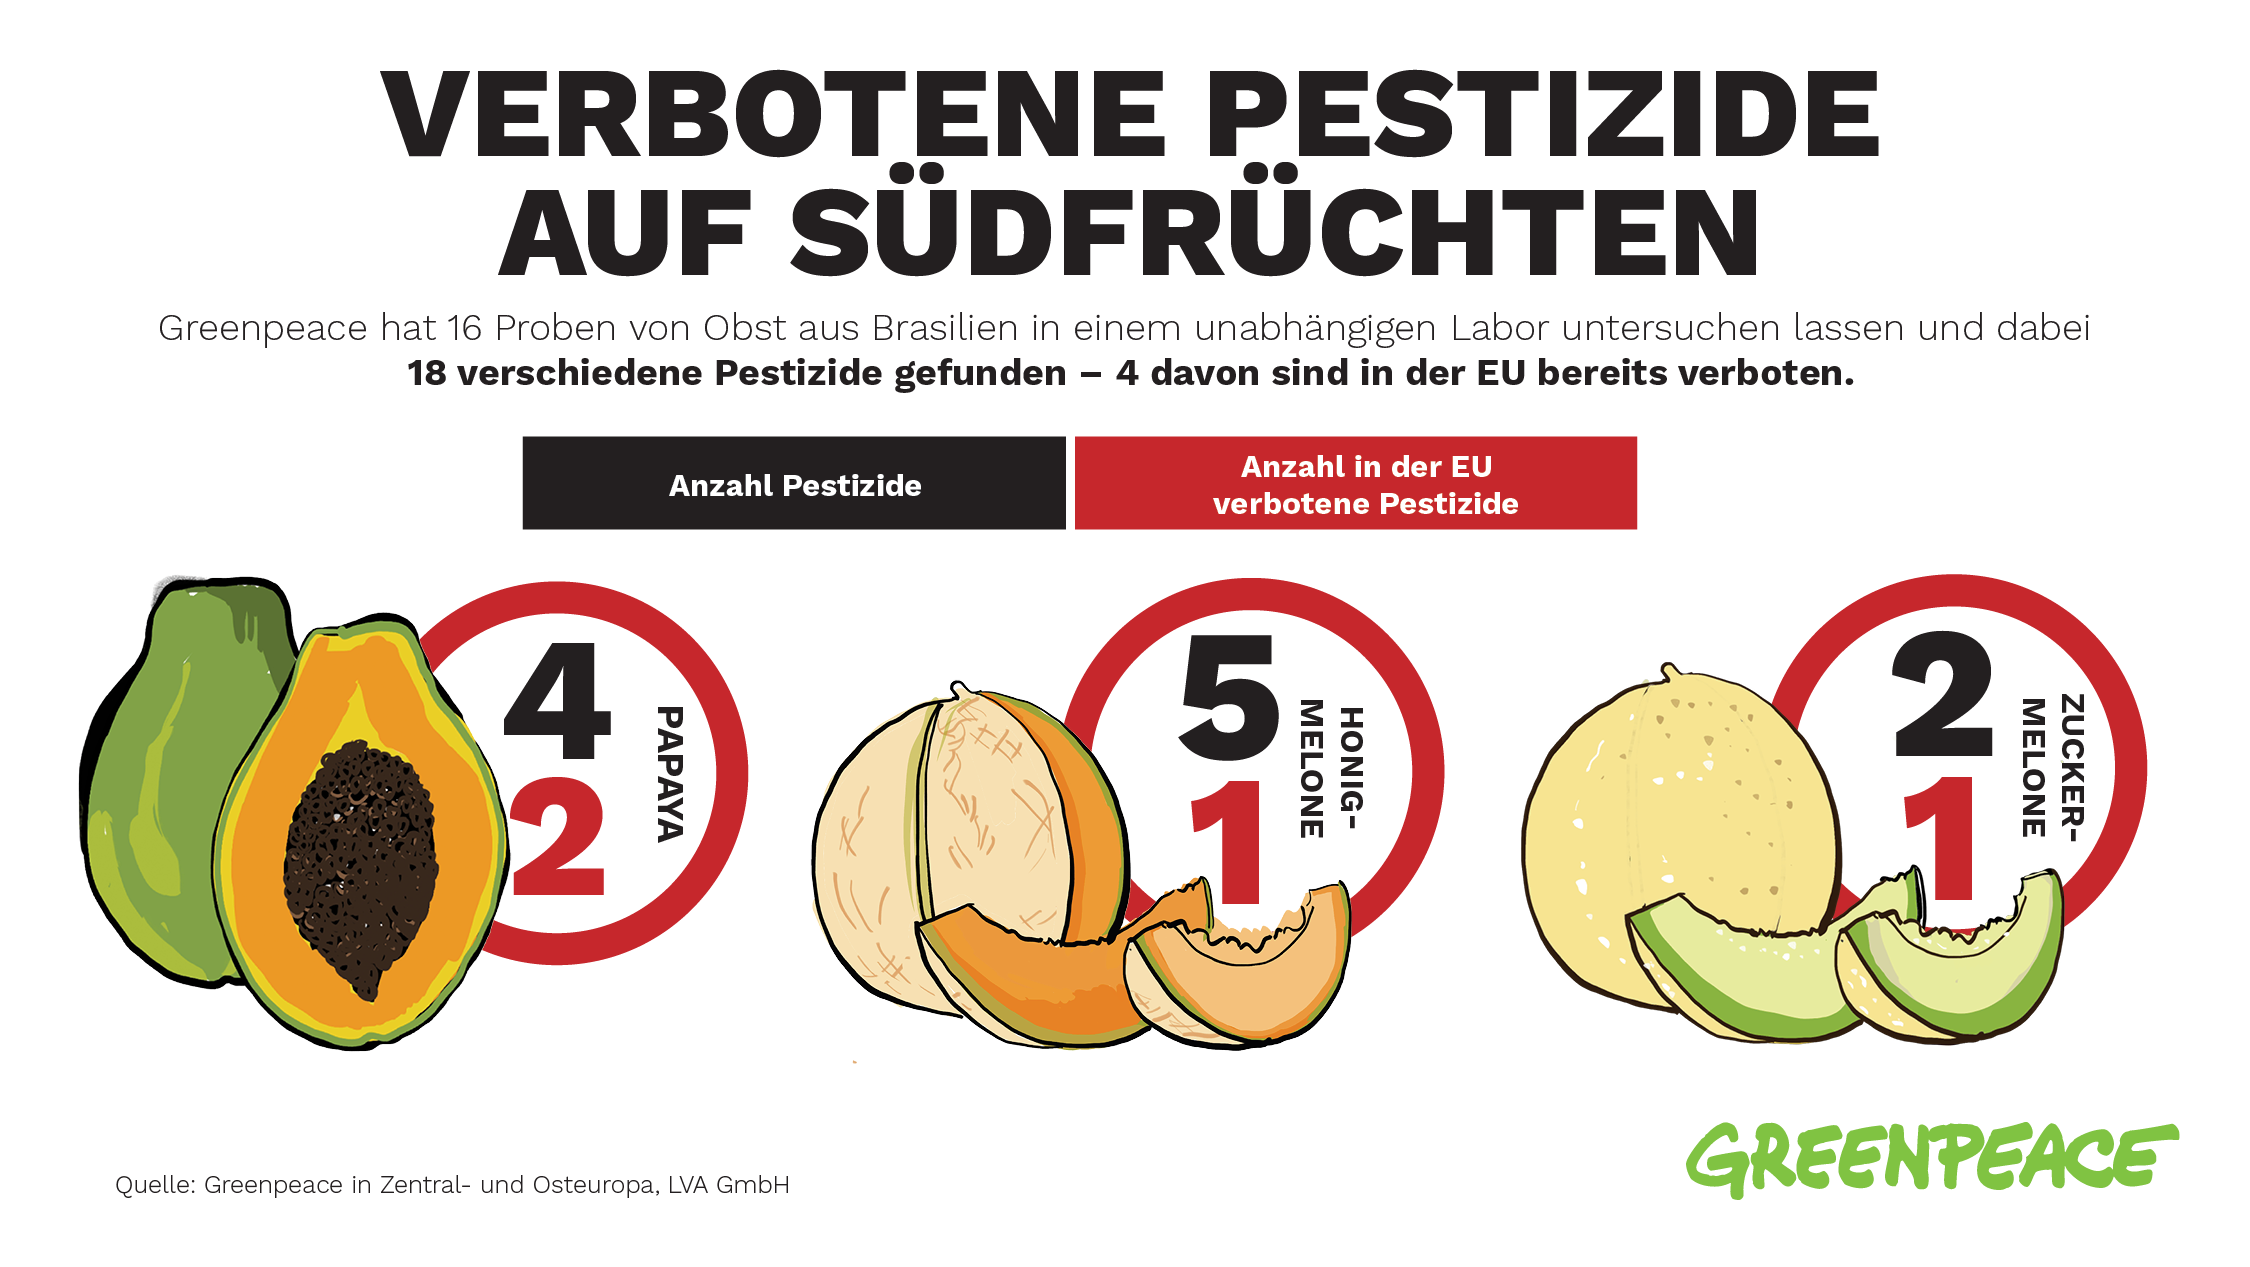 Grafik zu Pestizidbelastung: Auf 16 Proben von Obst aus Brasilien wurden 18 verschiedene Pestizide gefunden, 4 davon sind in der EU verboten